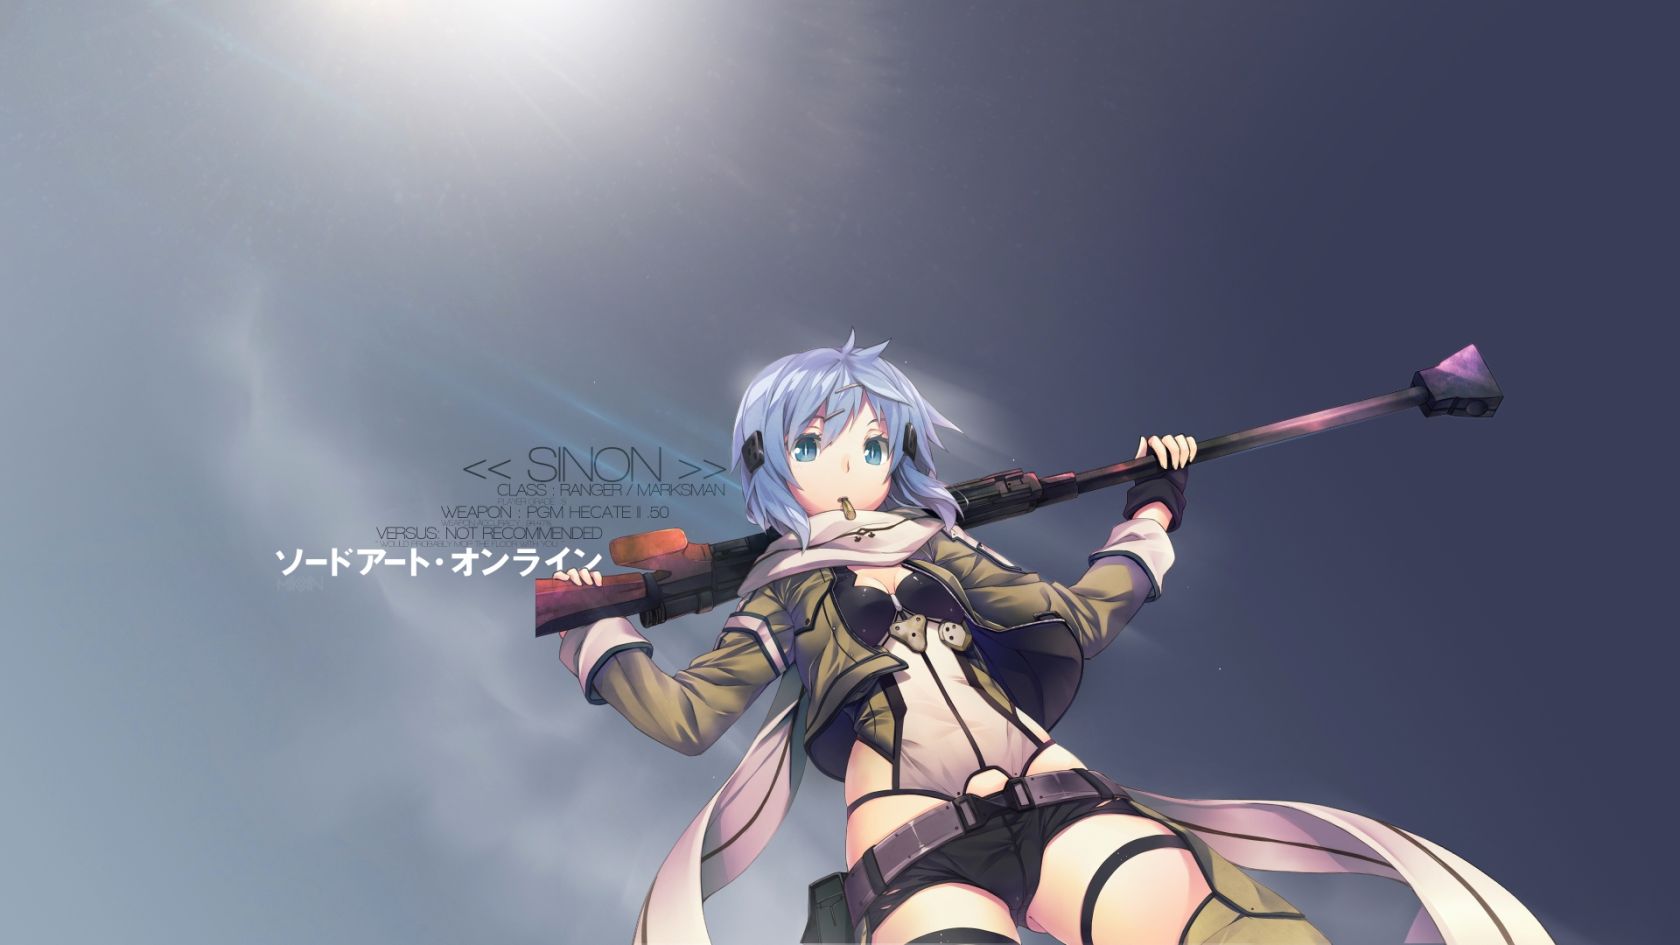 Sinon Sword Art Online Anime Wallpaper